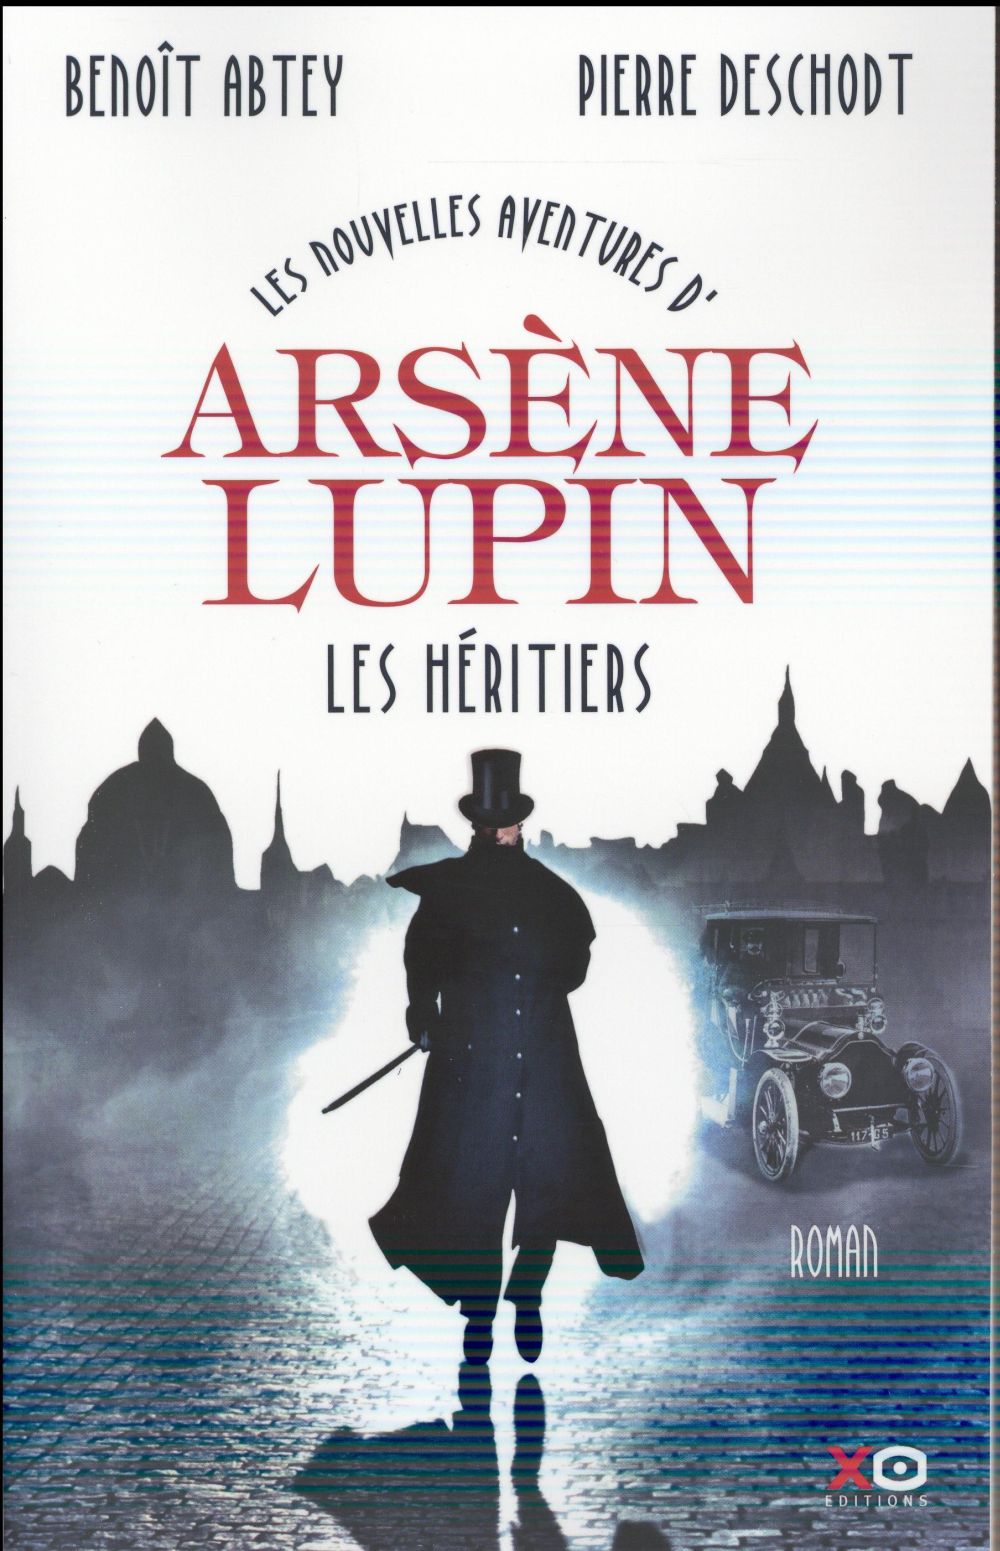 LES NOUVELLES AVENTURES D'ARSENE LUPIN - LES HERITIERS